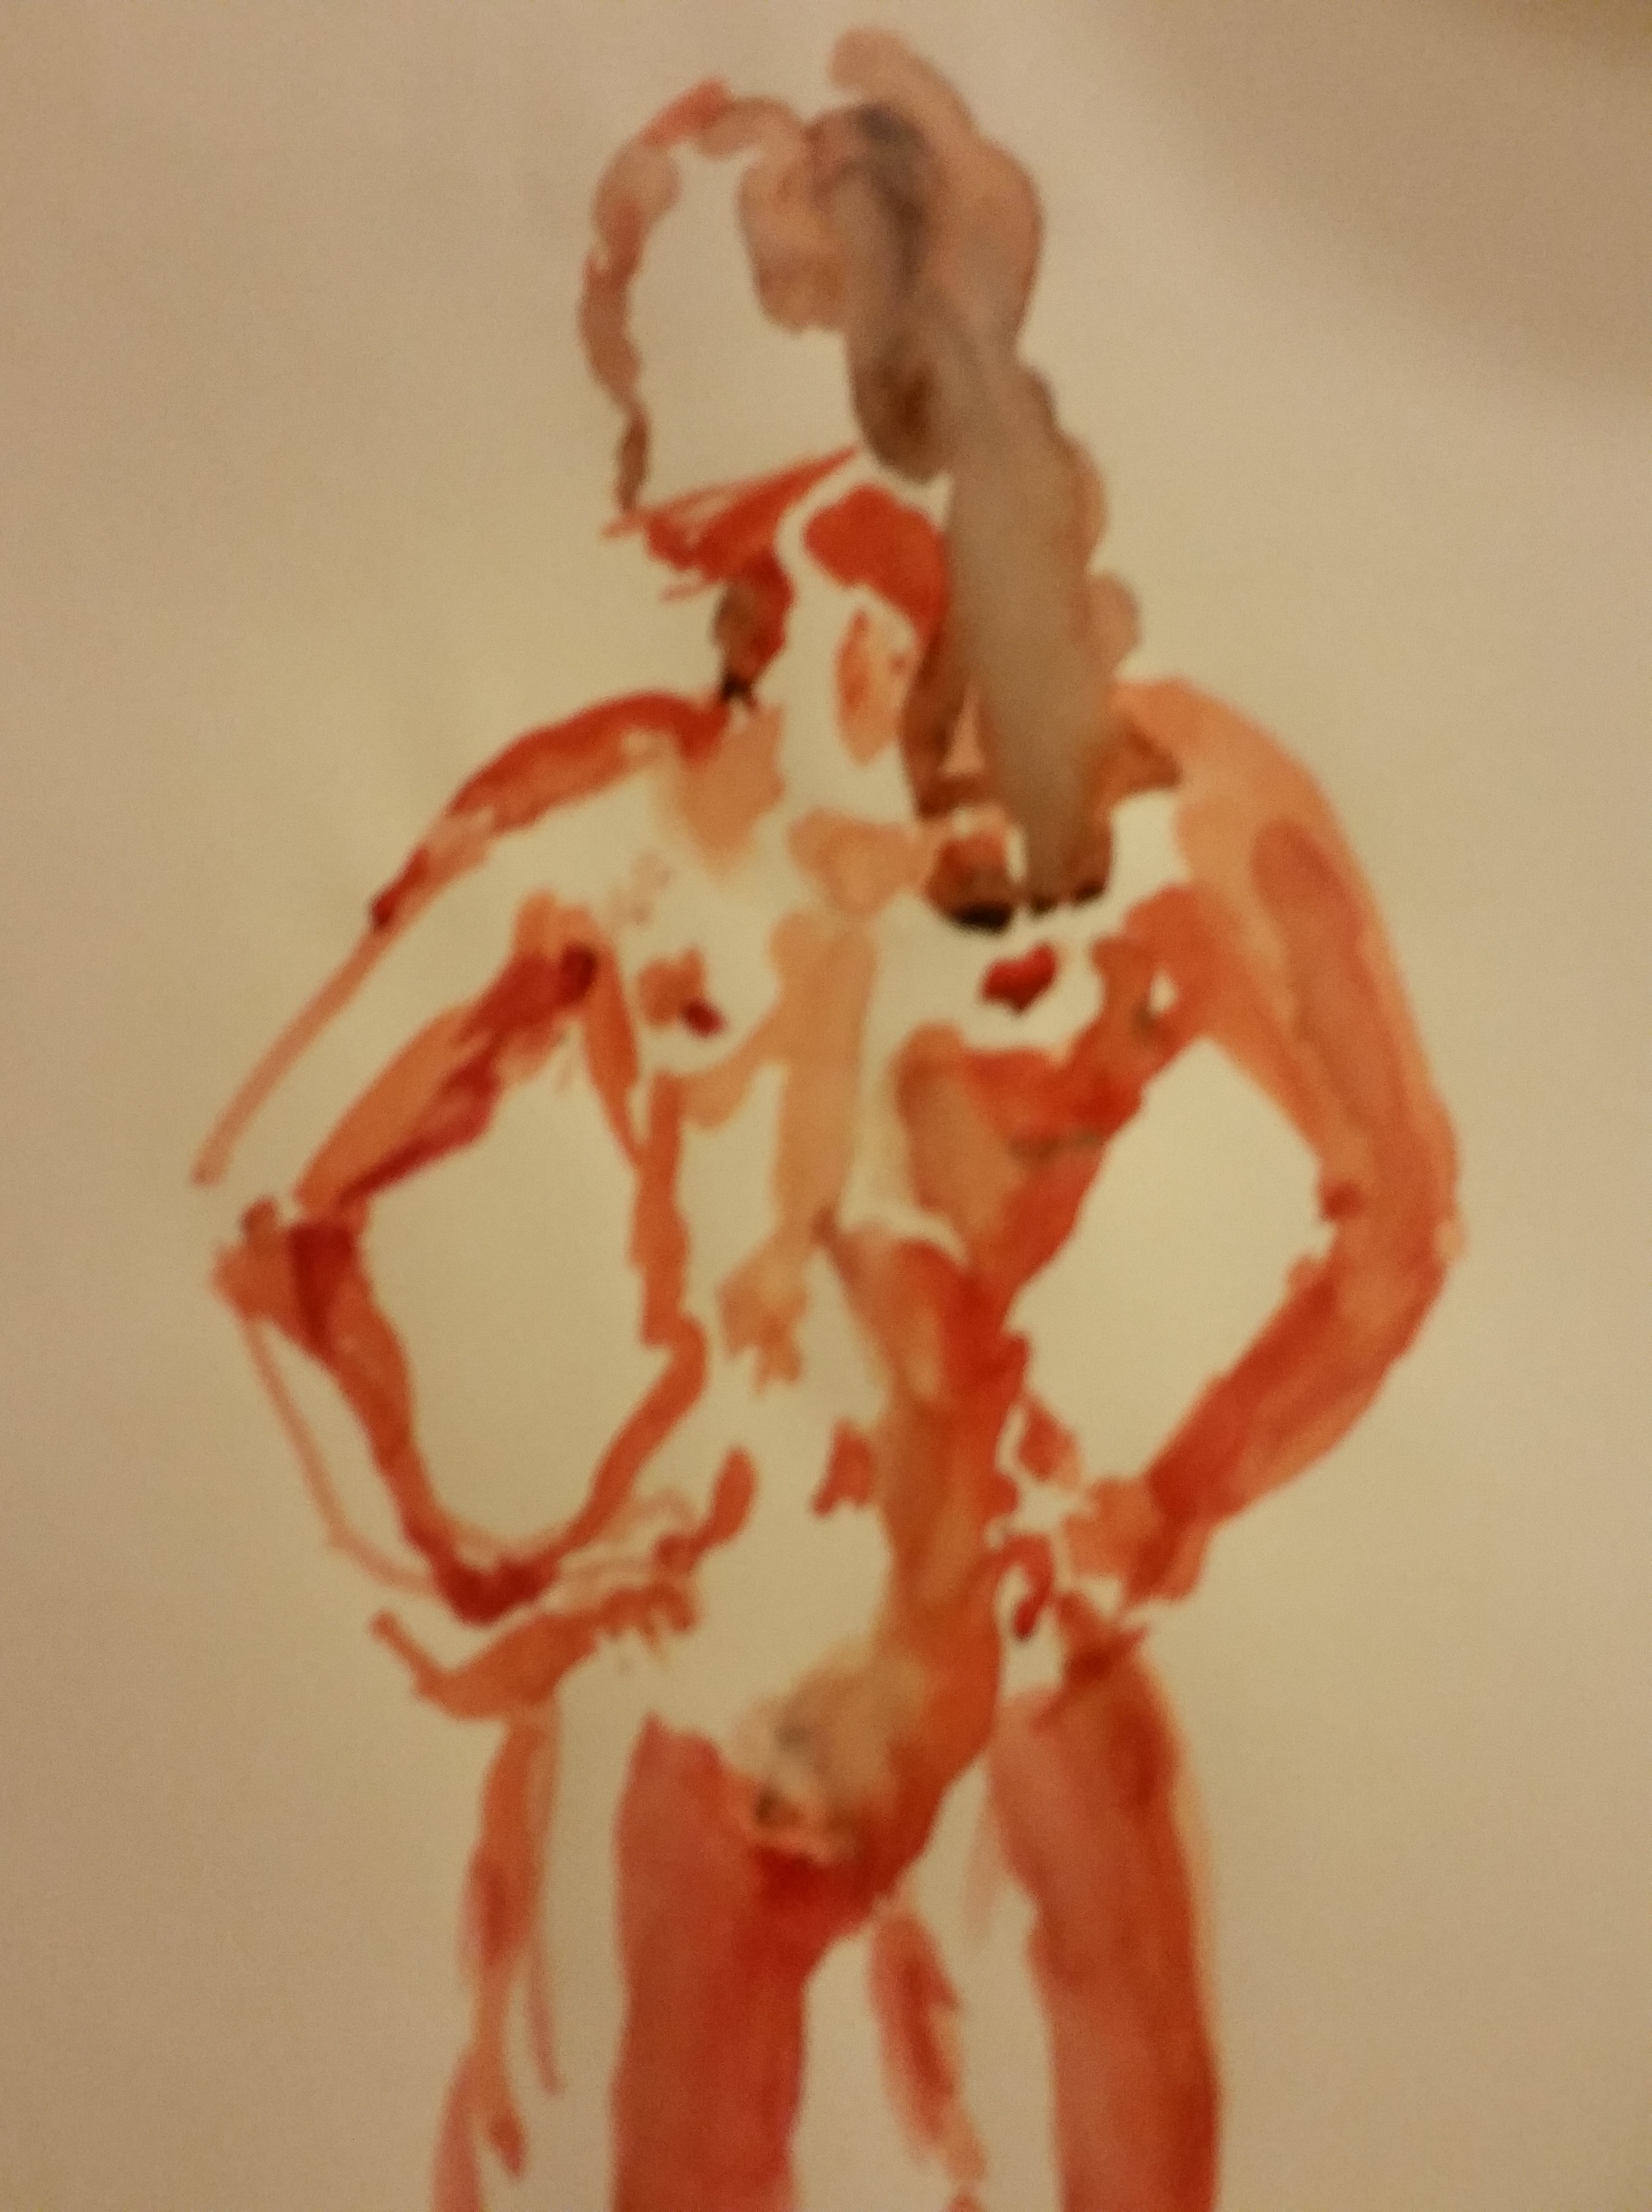  Aquarelle orange femme buste face  cours de dessin 